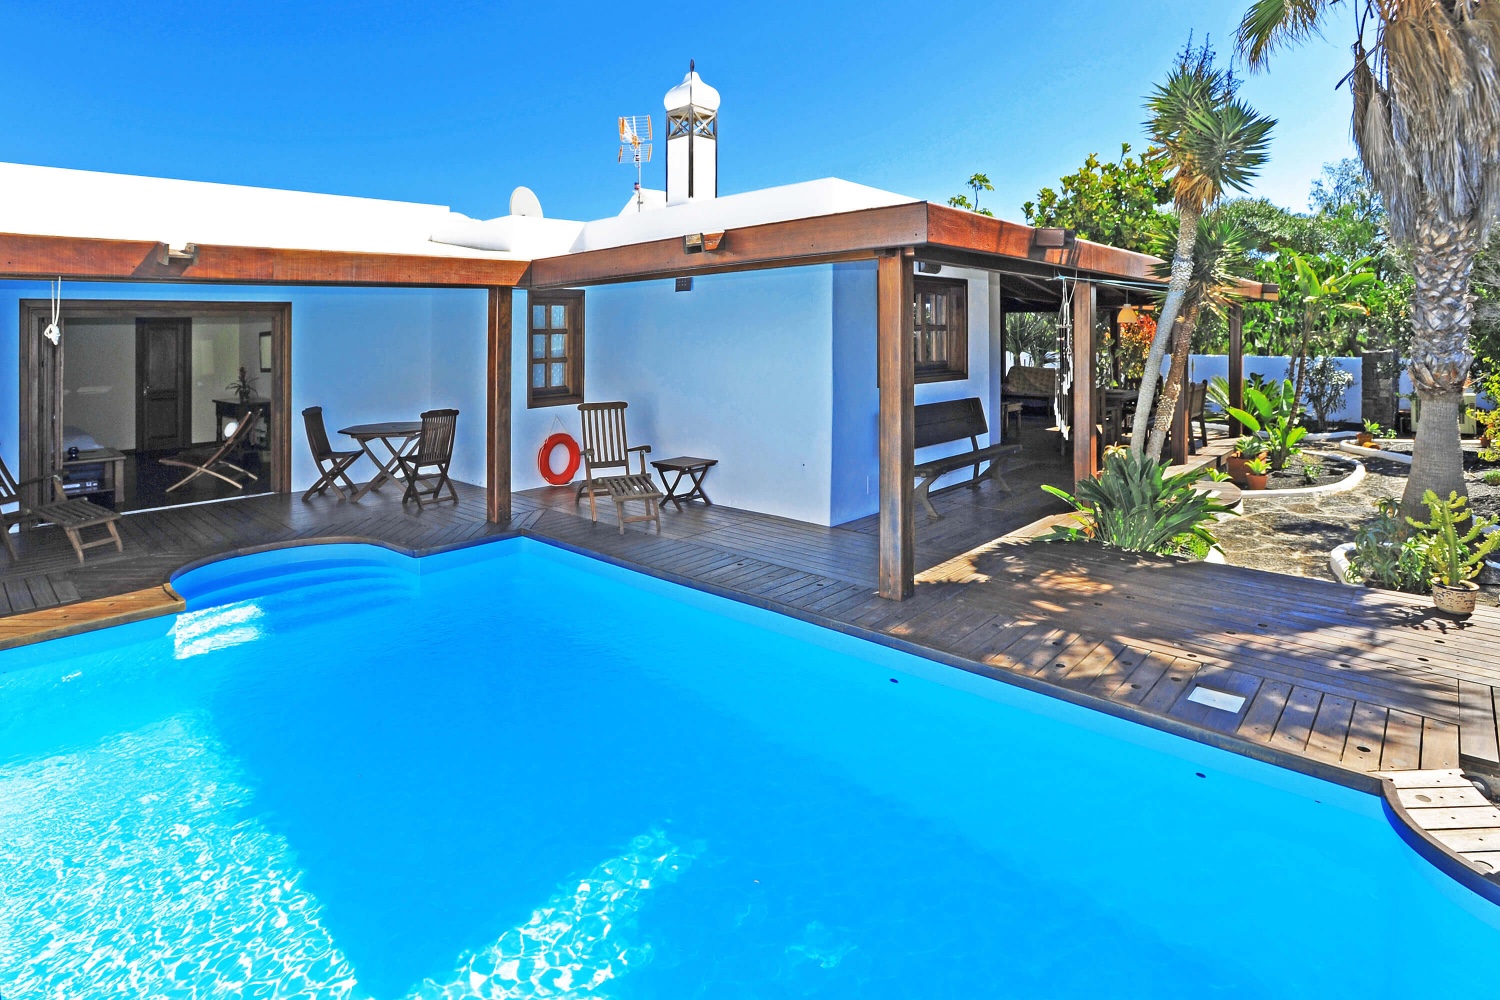 Wunderschönes Haus im Landhausstil für Ihren Urlaub auf Lanzarote, mit schönem Garten und privatem Pool in der Nähe des Strandes und des Golfplatzes in Costa Teguise